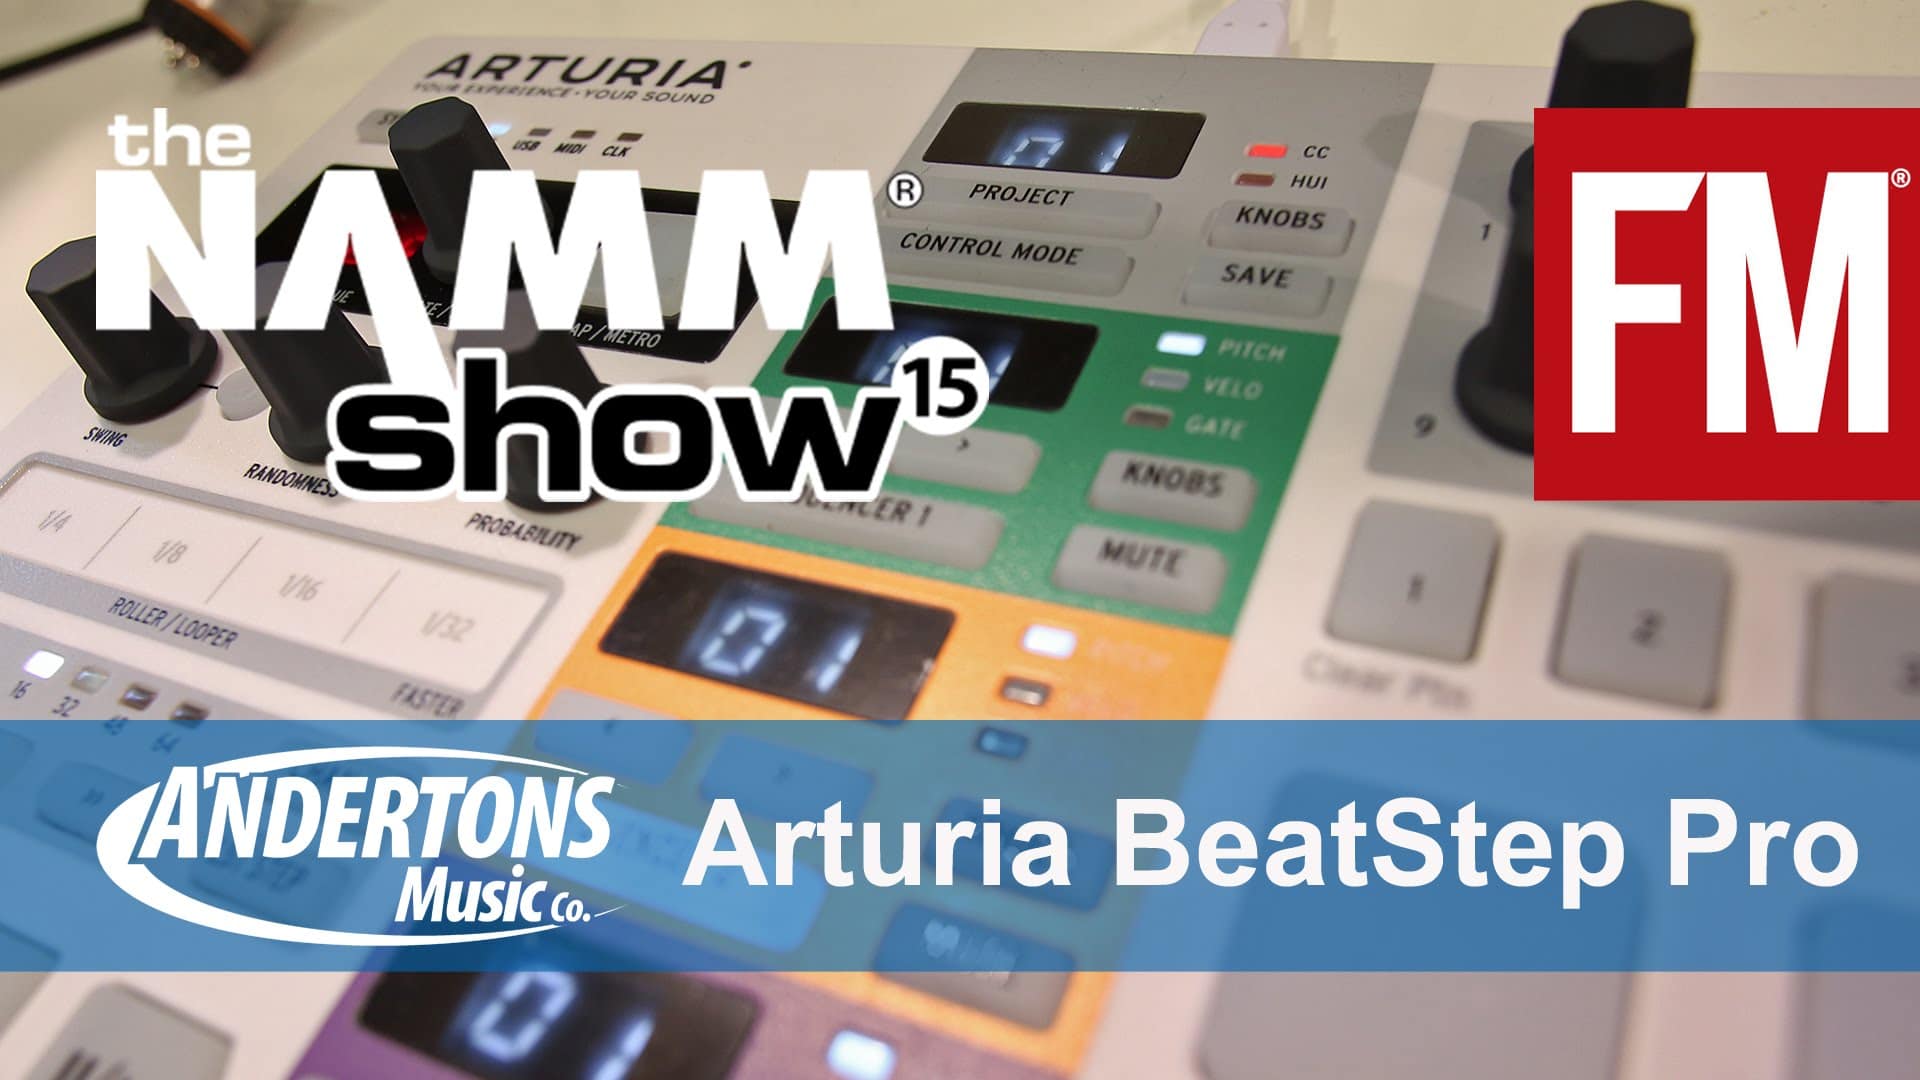 NAMM 2015 – Arturia Beatstep Pro – YouTube